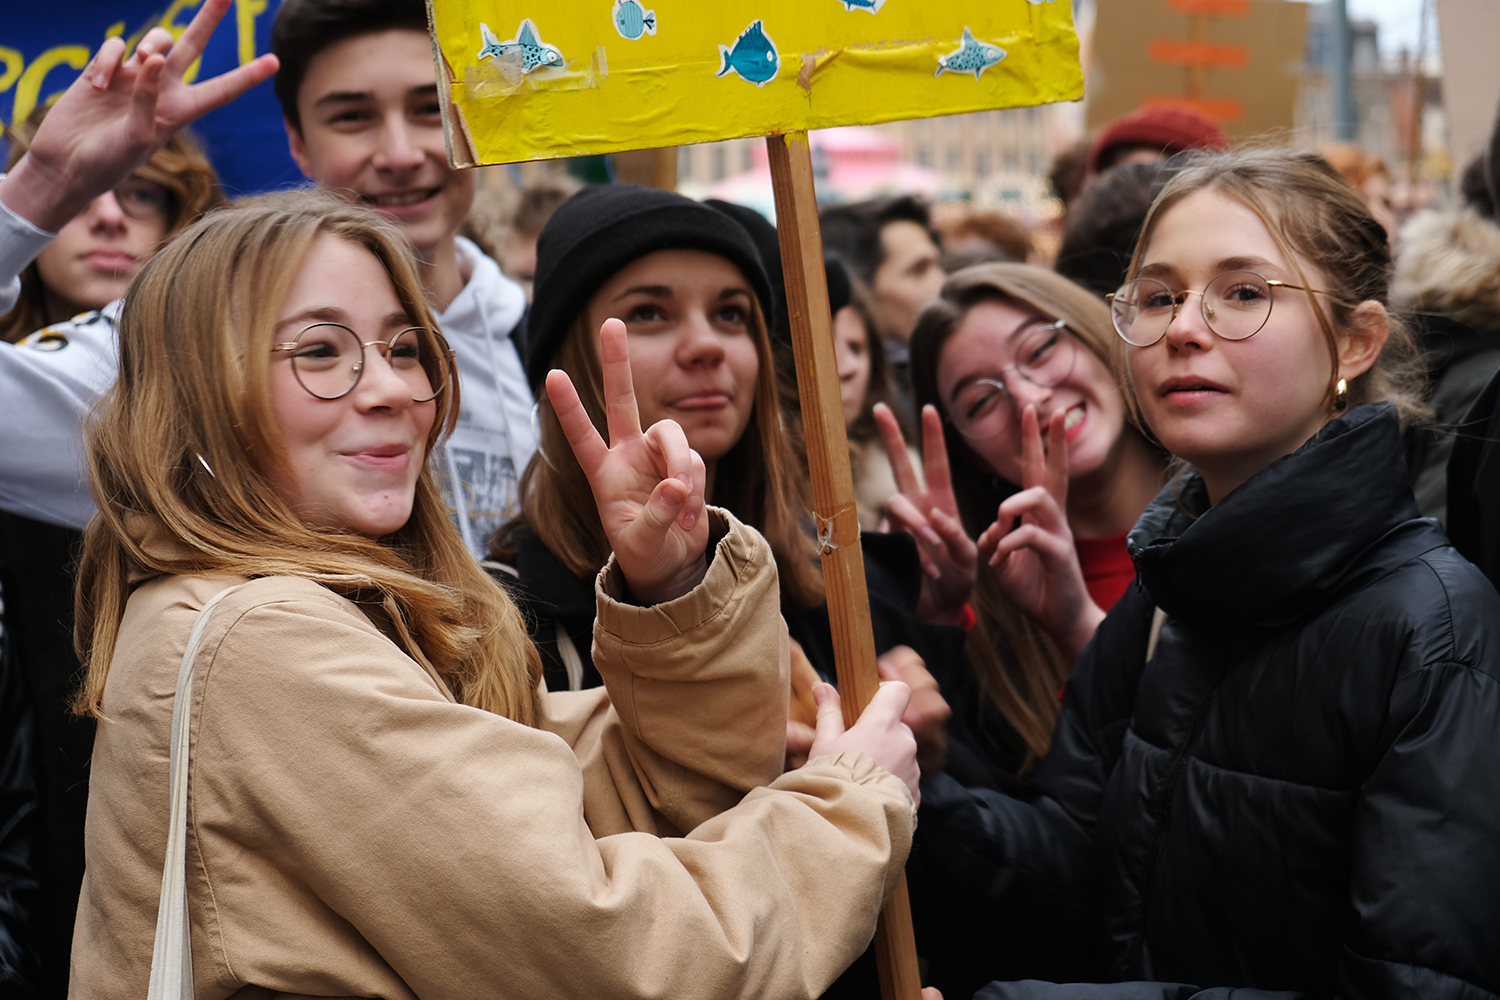 Au total, 400 jeunes ont défilé dans les rues de Lille le 29 novembre 2019, contre plus de 6 000 lors de la première marche mondiale pour le climat, le 15 mars 2019.